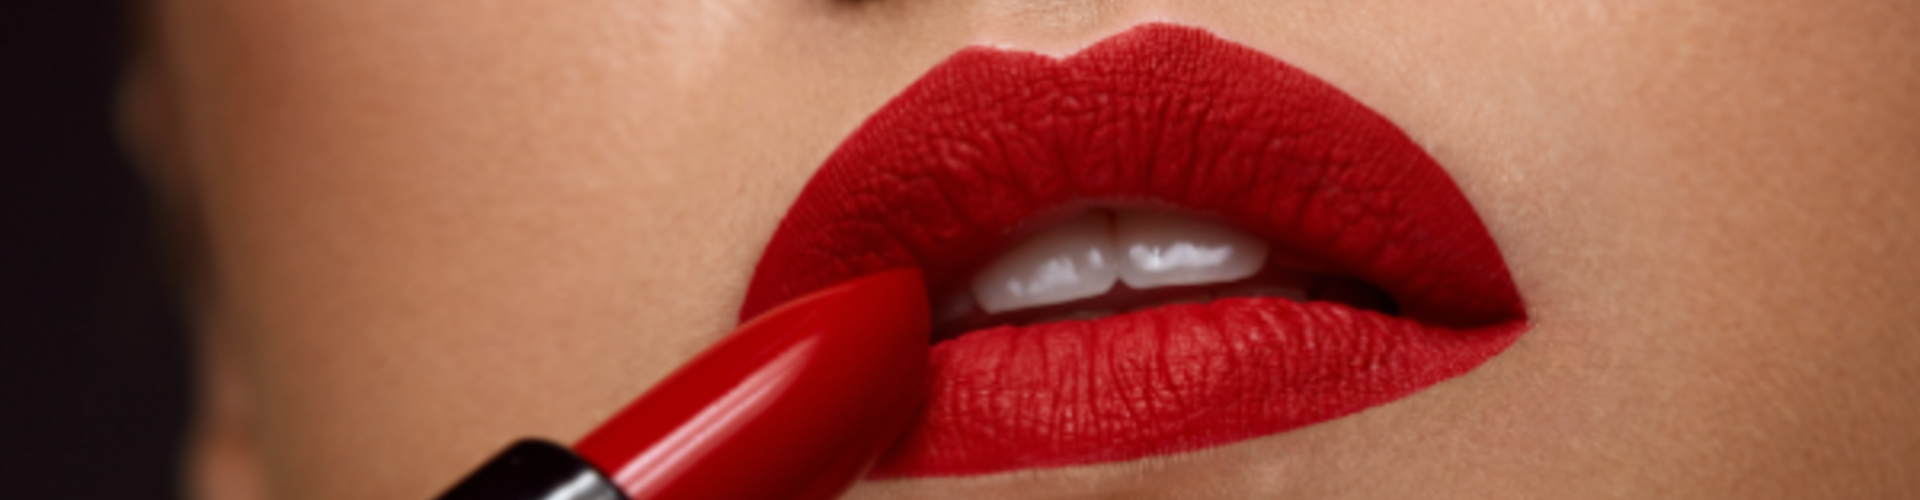 Lipstick trivia